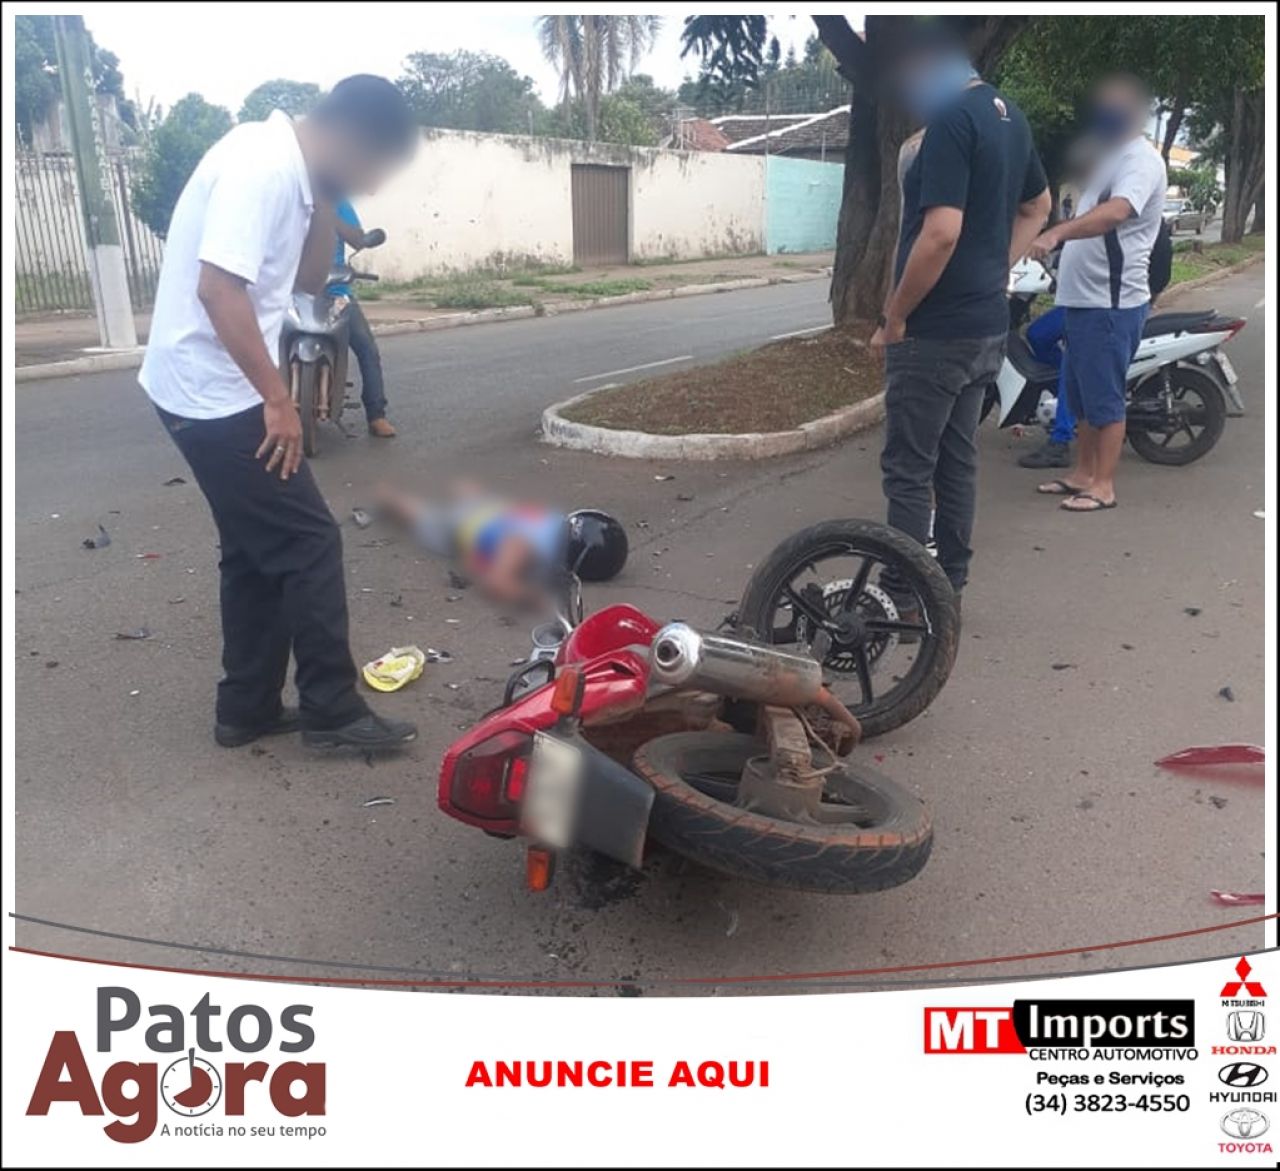 Motociclista inabilitado fica gravemente ferido em acidente na Av. Paranaíba 